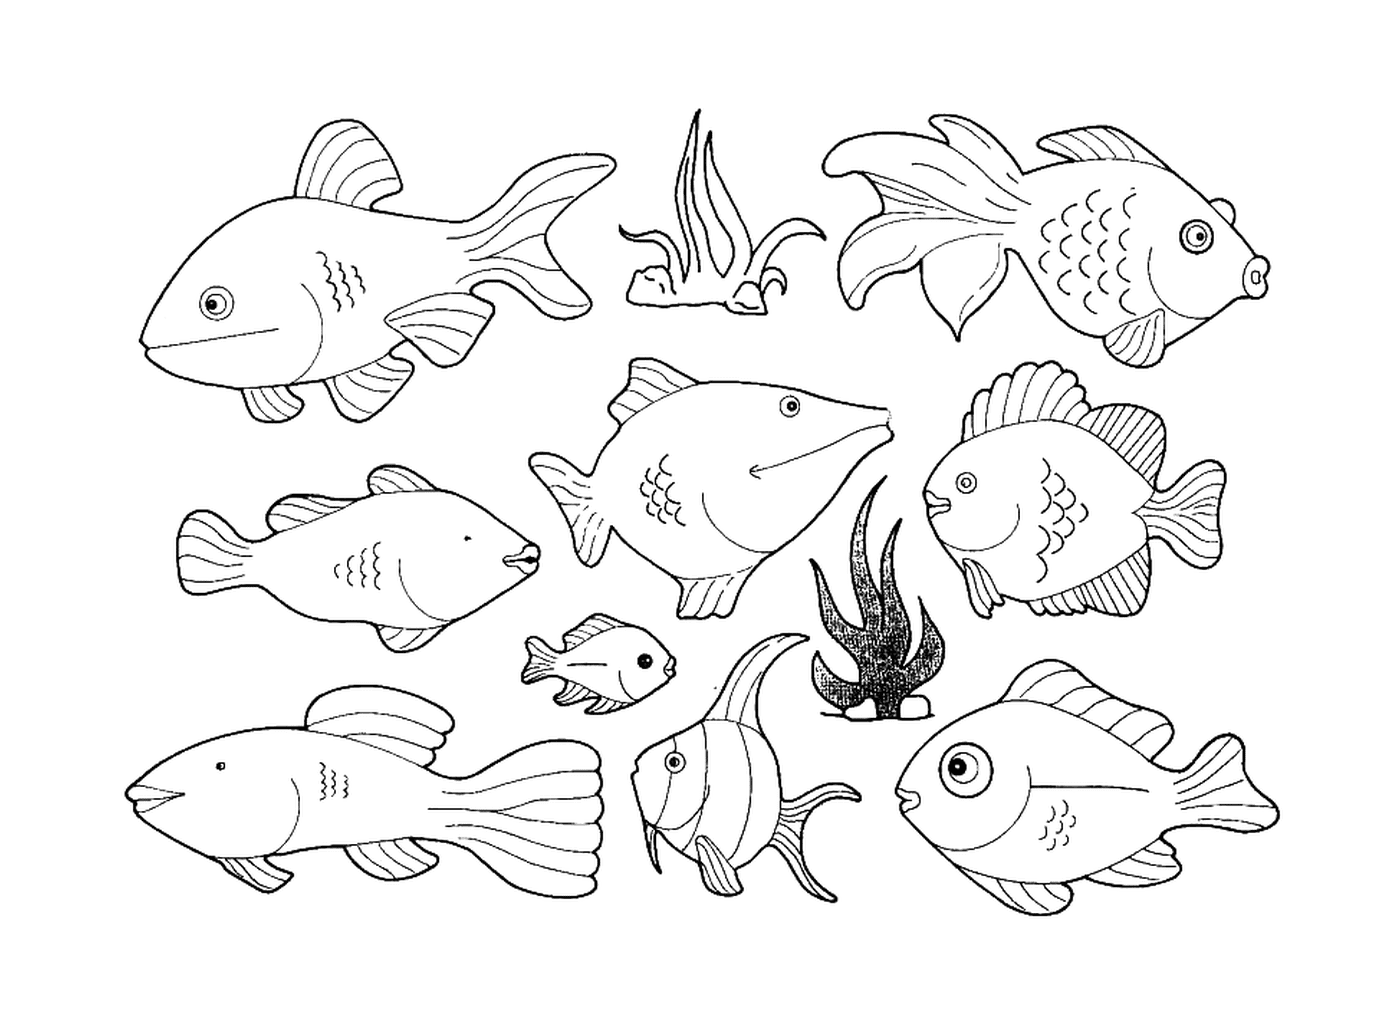  Viele Arten von Fischen auf dieser Seite 